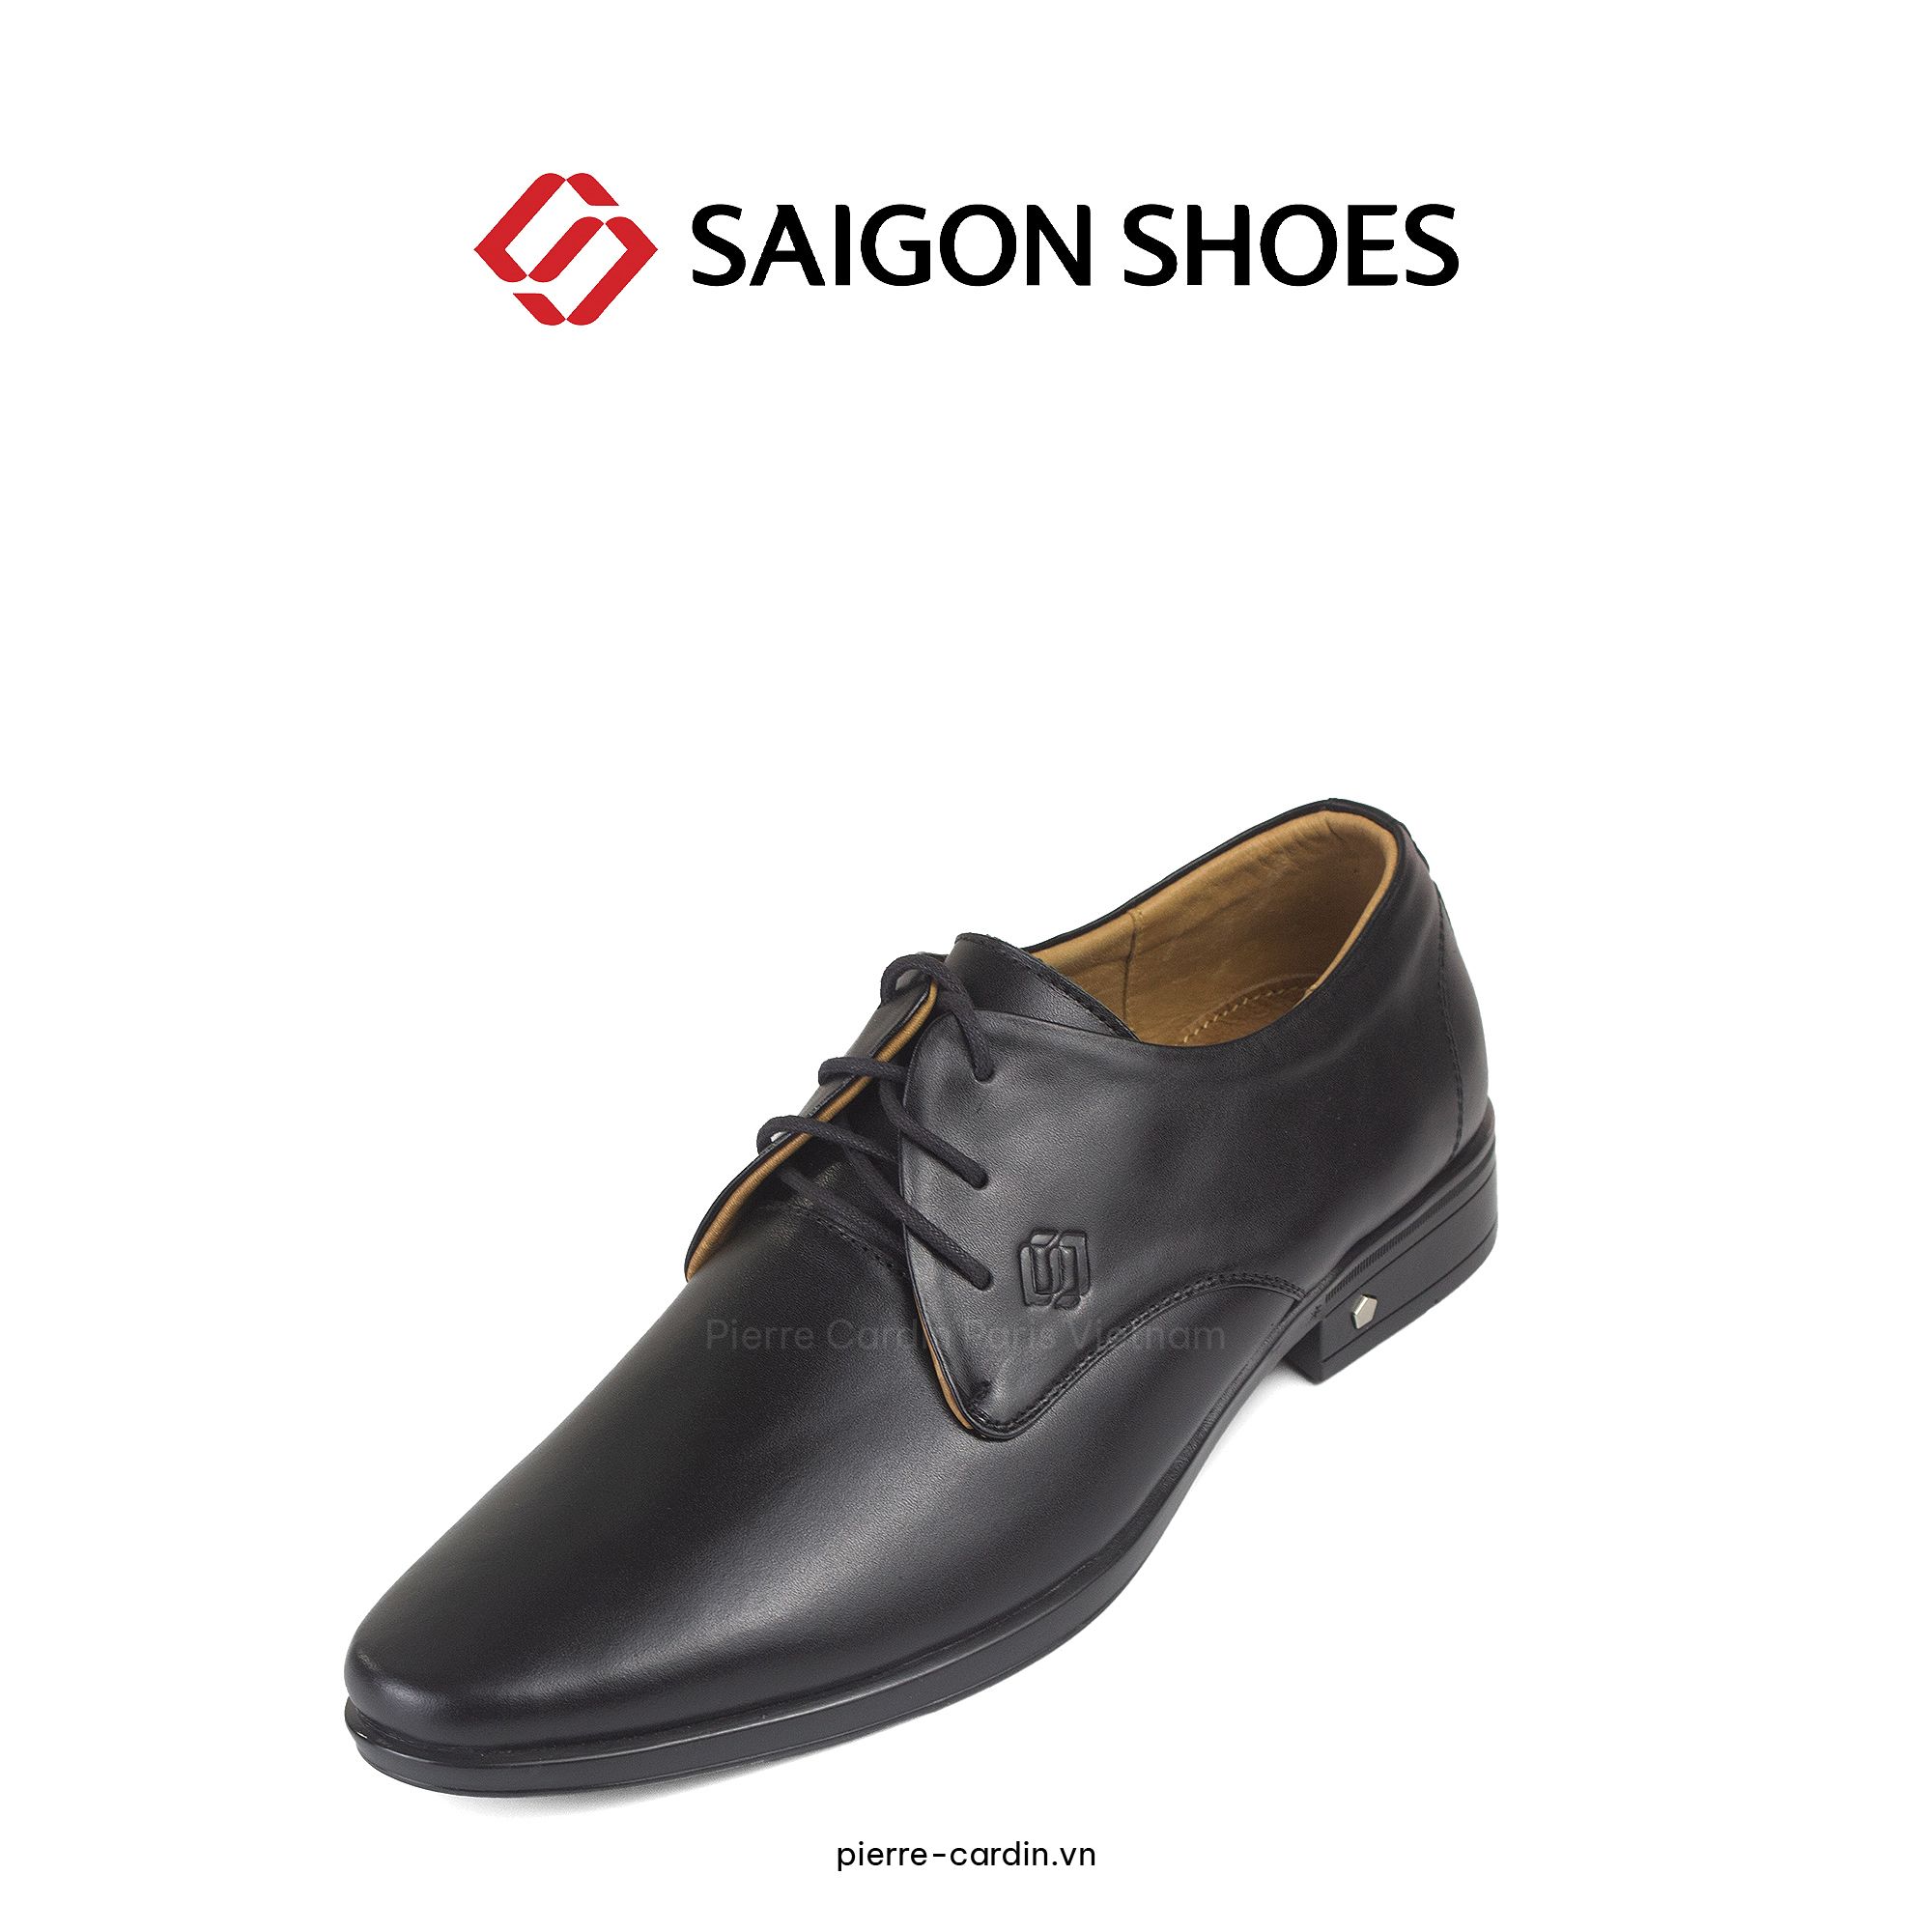 Giày Tây Saigon Shoes được chế tâc từ chất liệu Da Nappa cao cấp